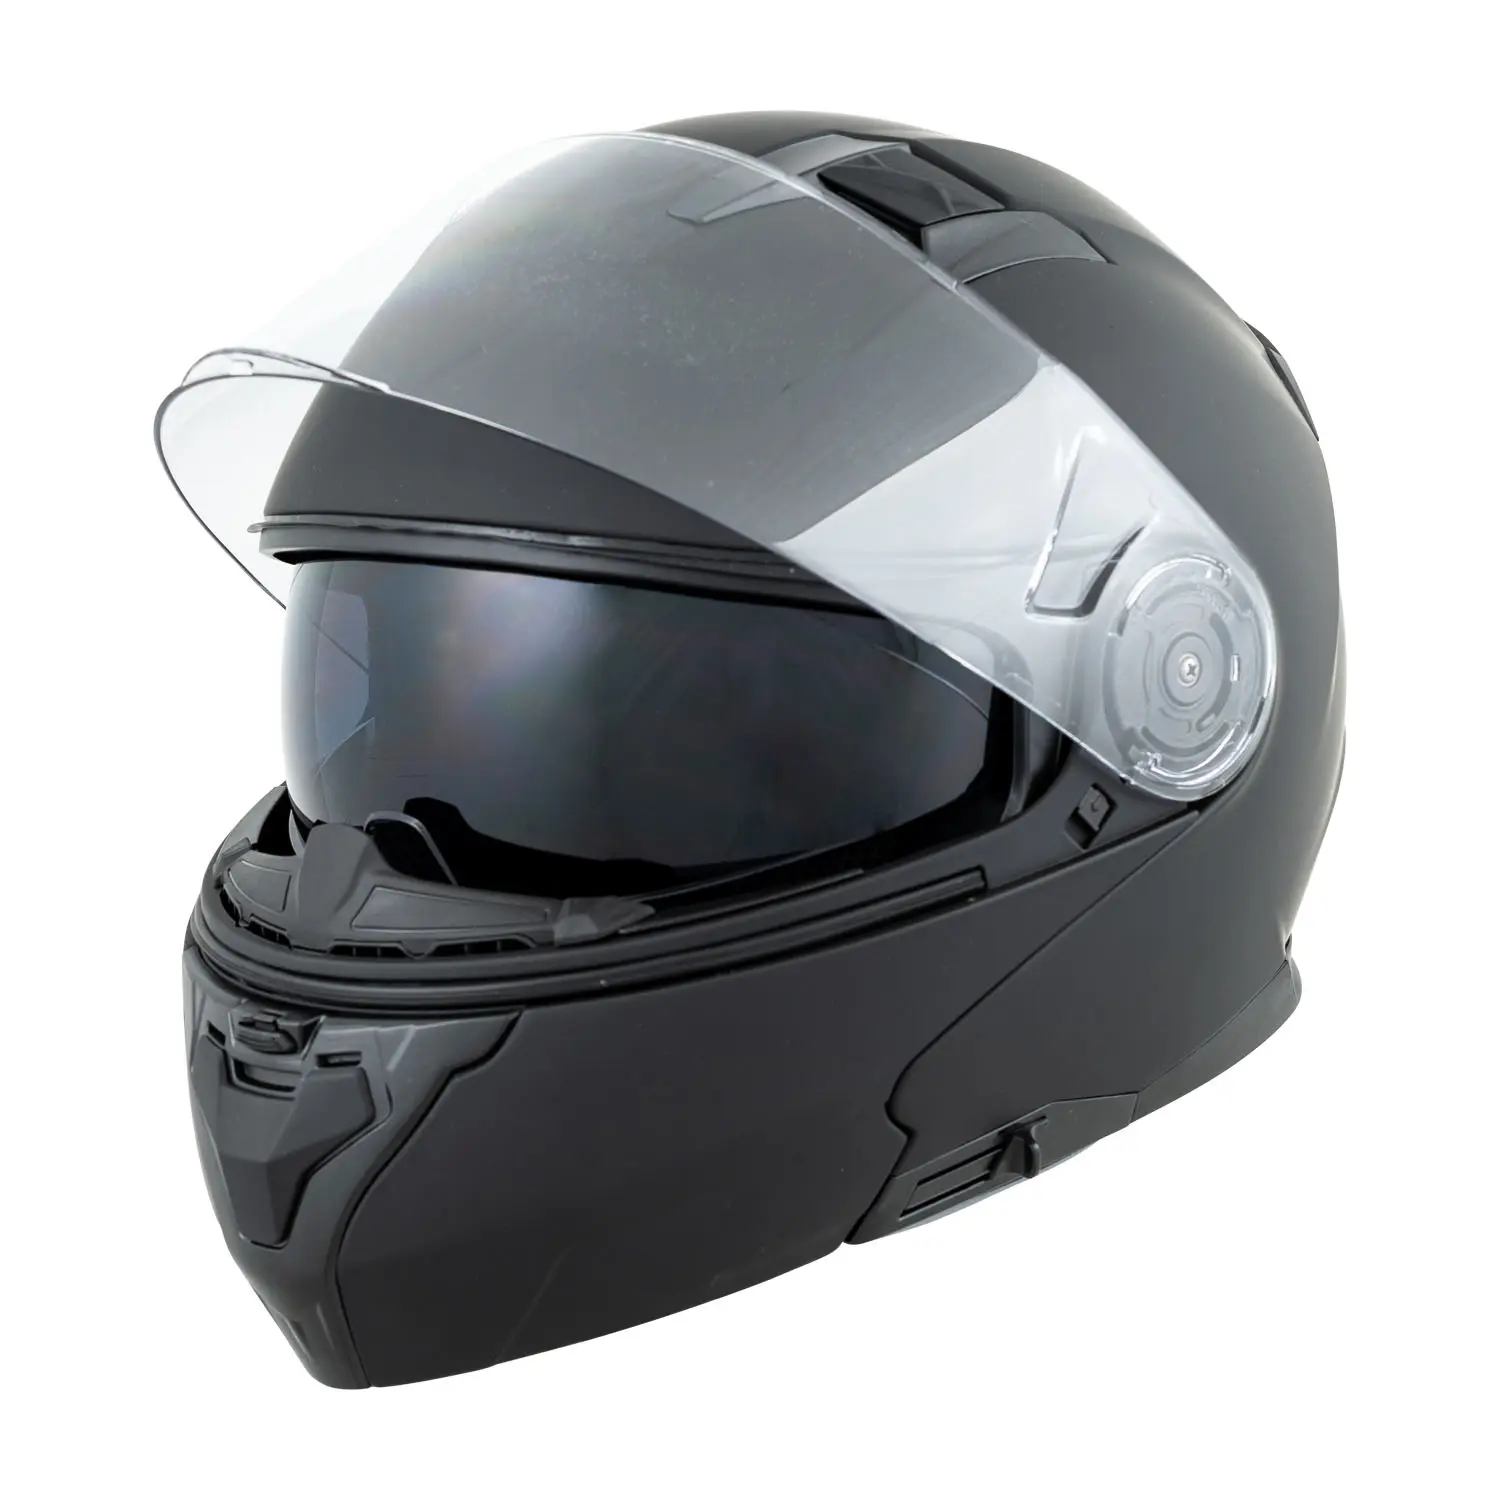 FL-4 Motorcycle Helmet